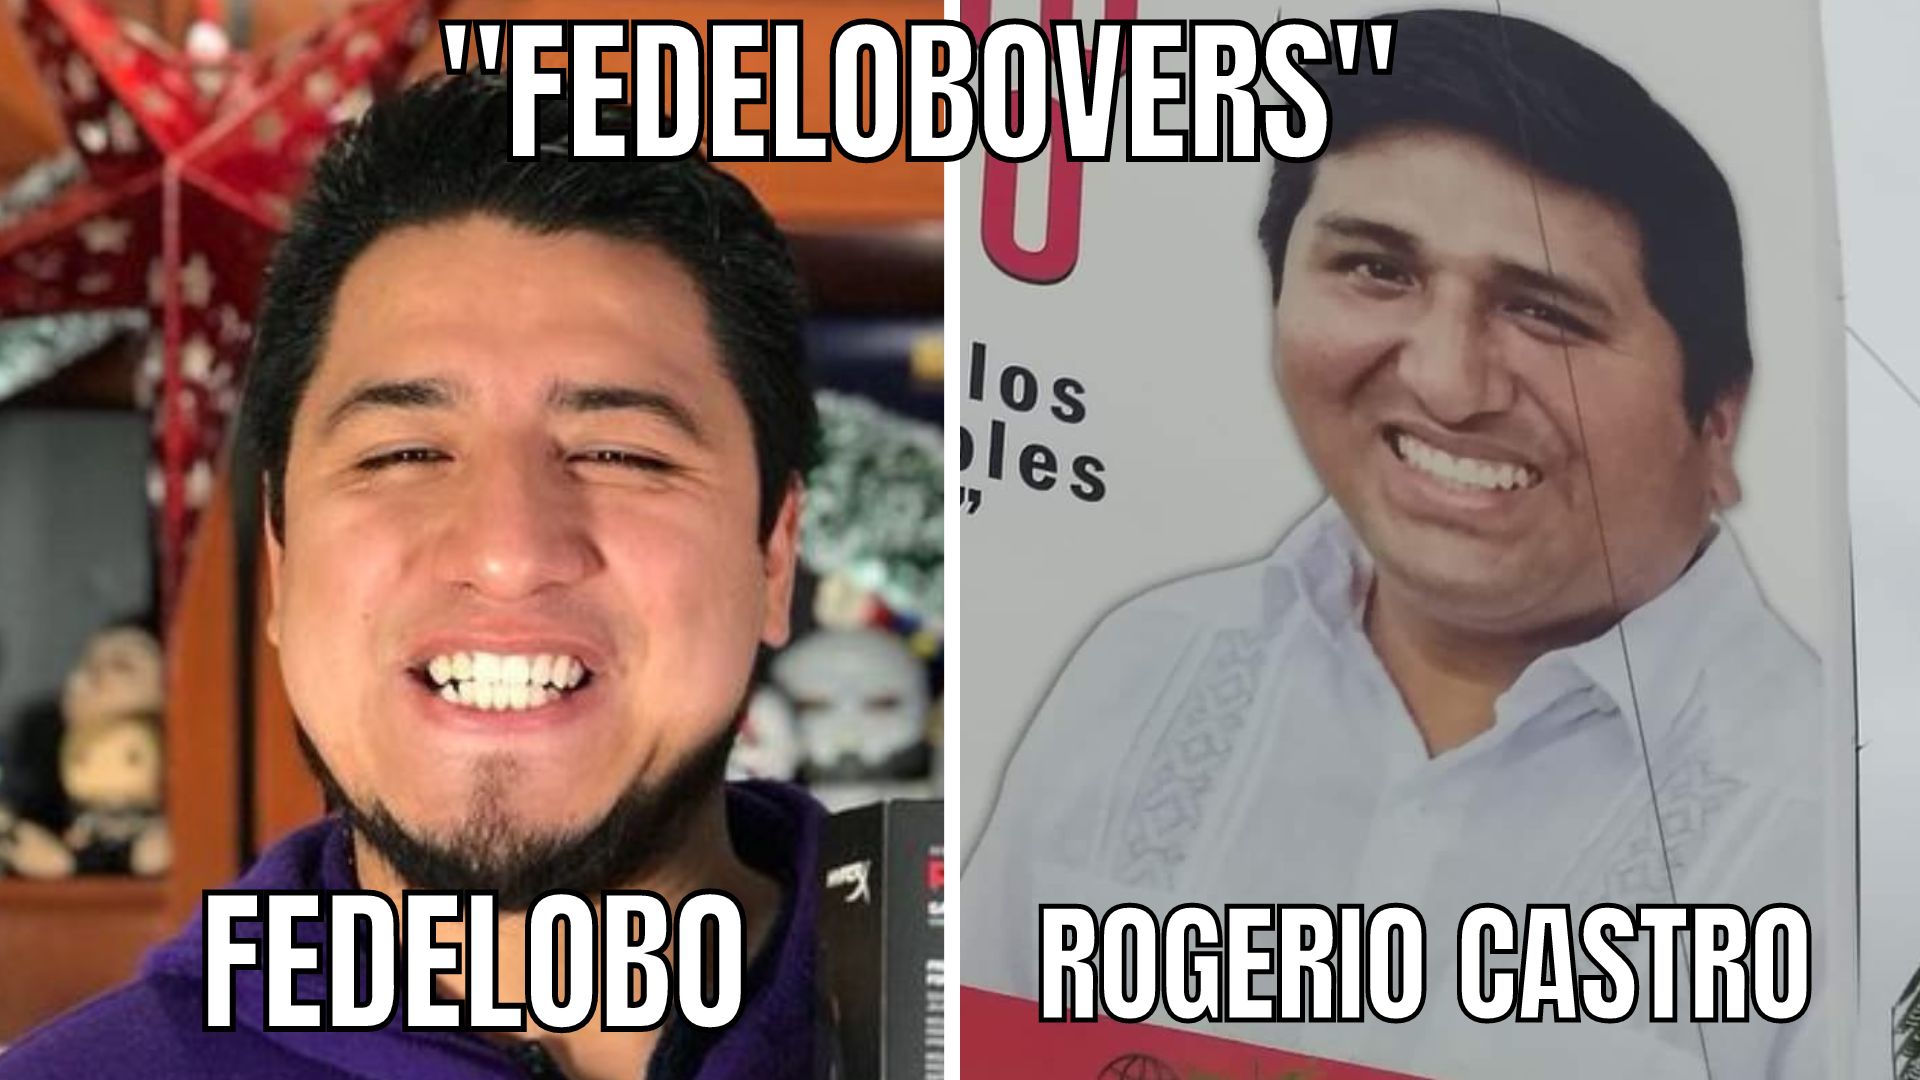 El Sorprendente Hallazgo del "Fedelobovers": La Diversión Desbordante por su Inesperado Parecido con Rogerio Castro